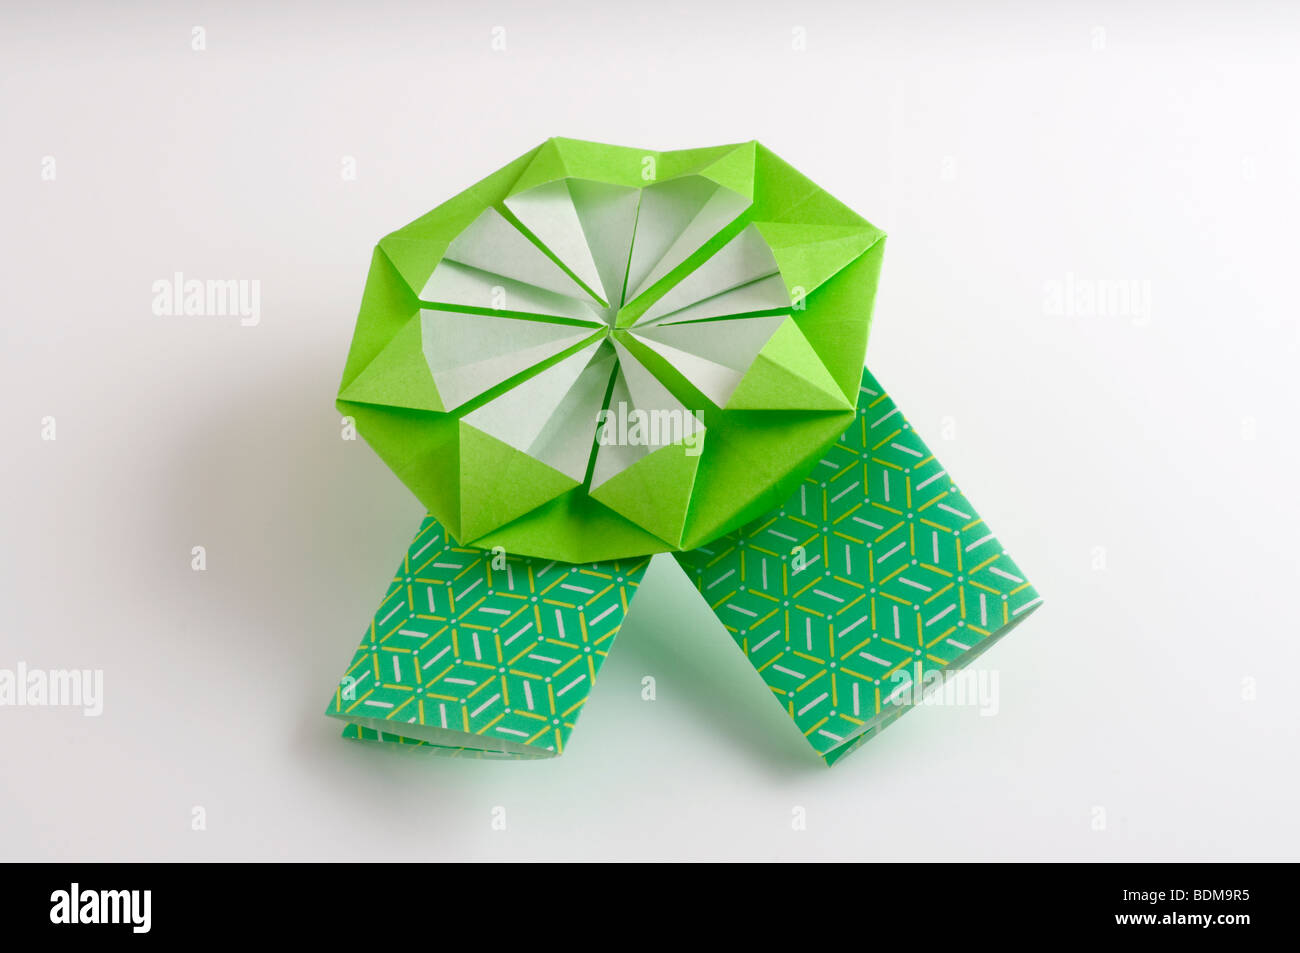 Origami ribbon. Stock Photo